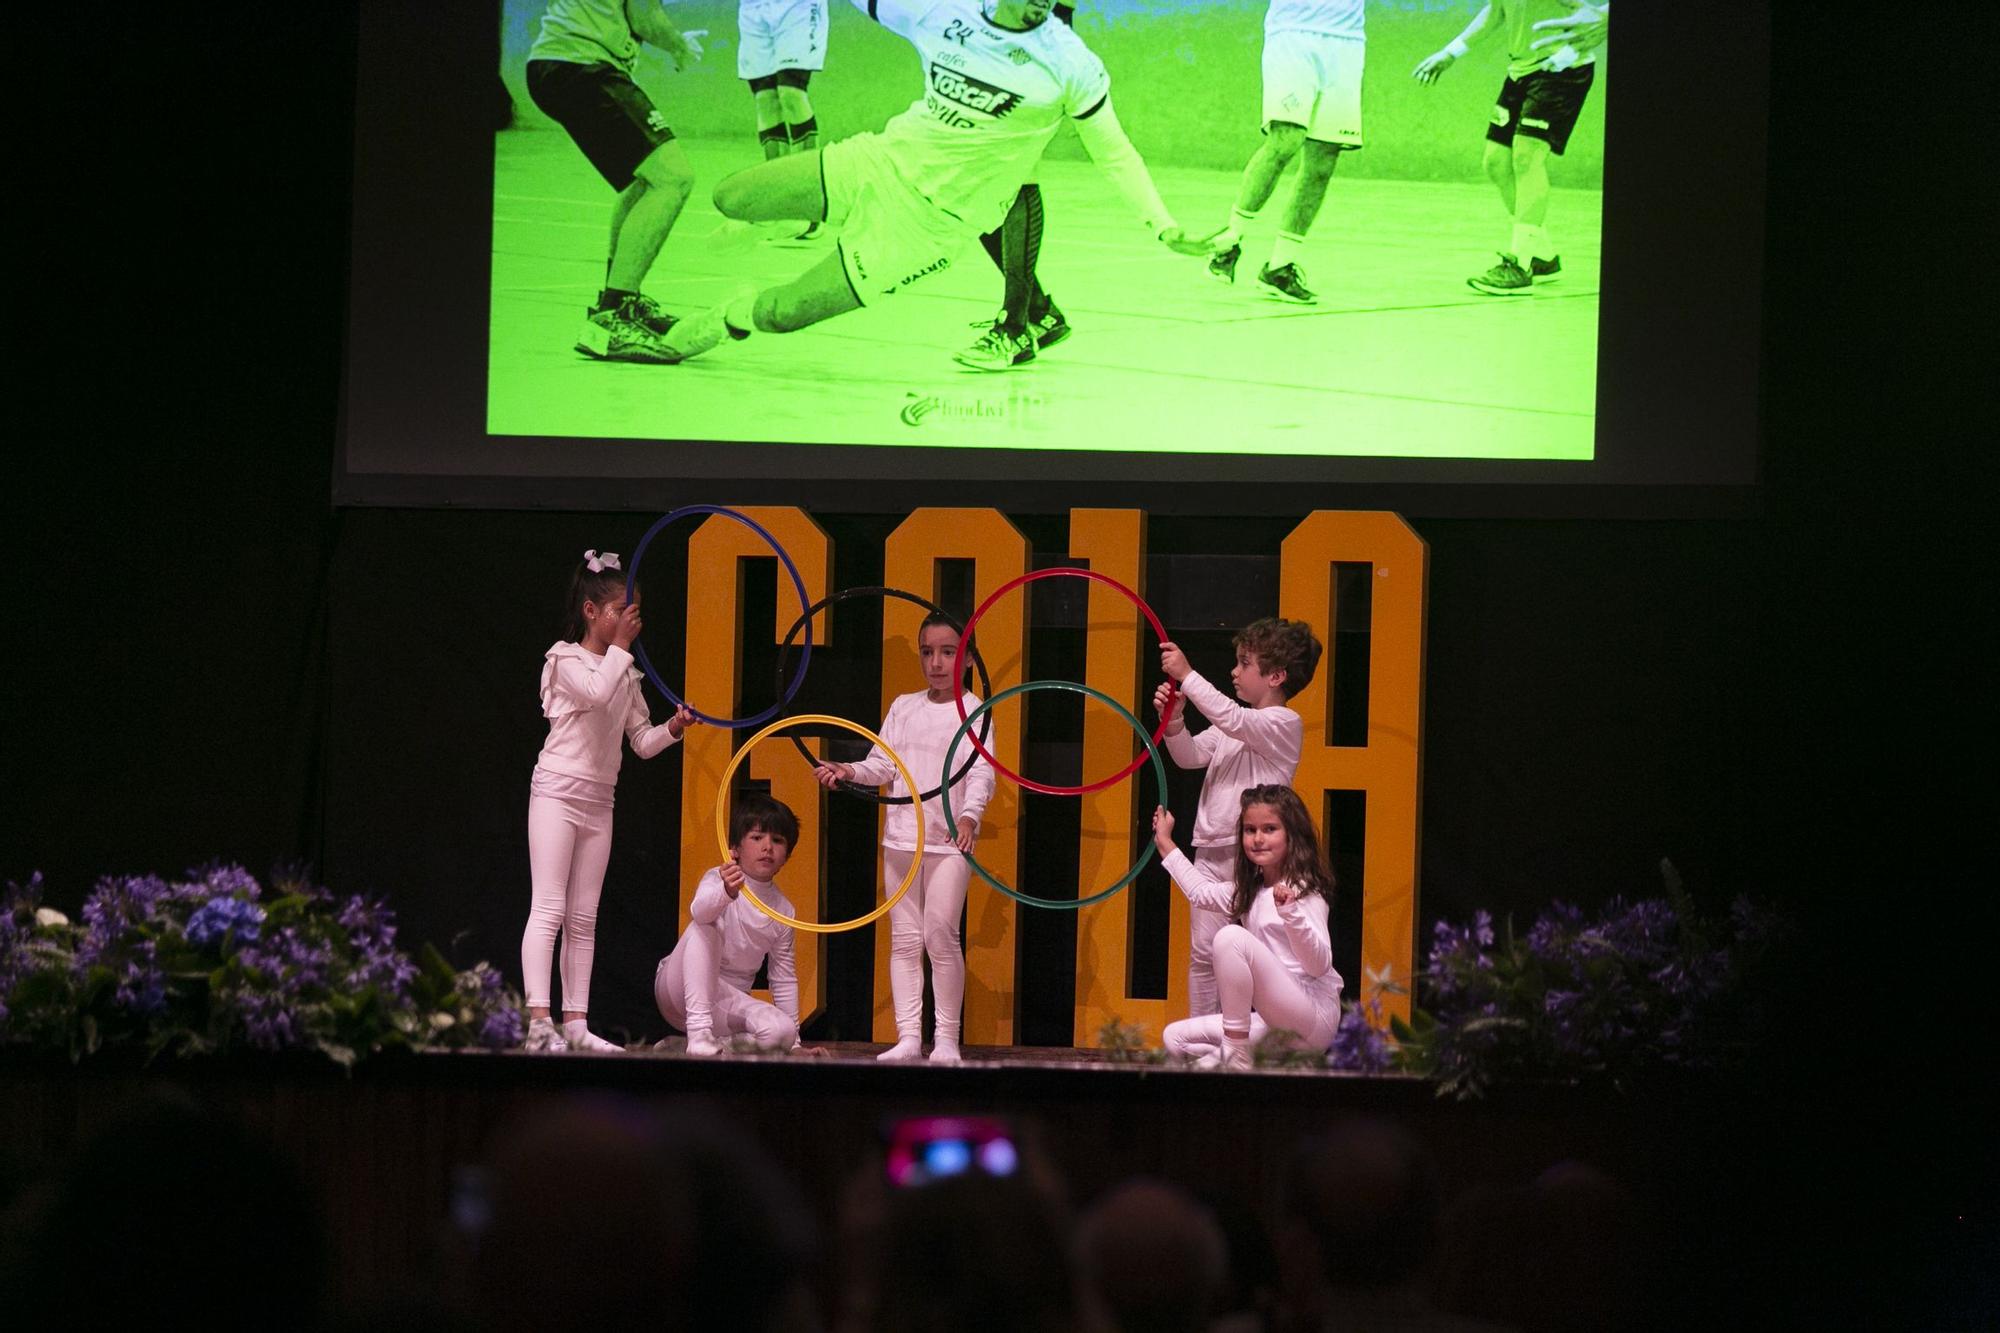 Así la I Gala Fundavi en Avilés: los premios a los deportistas del año